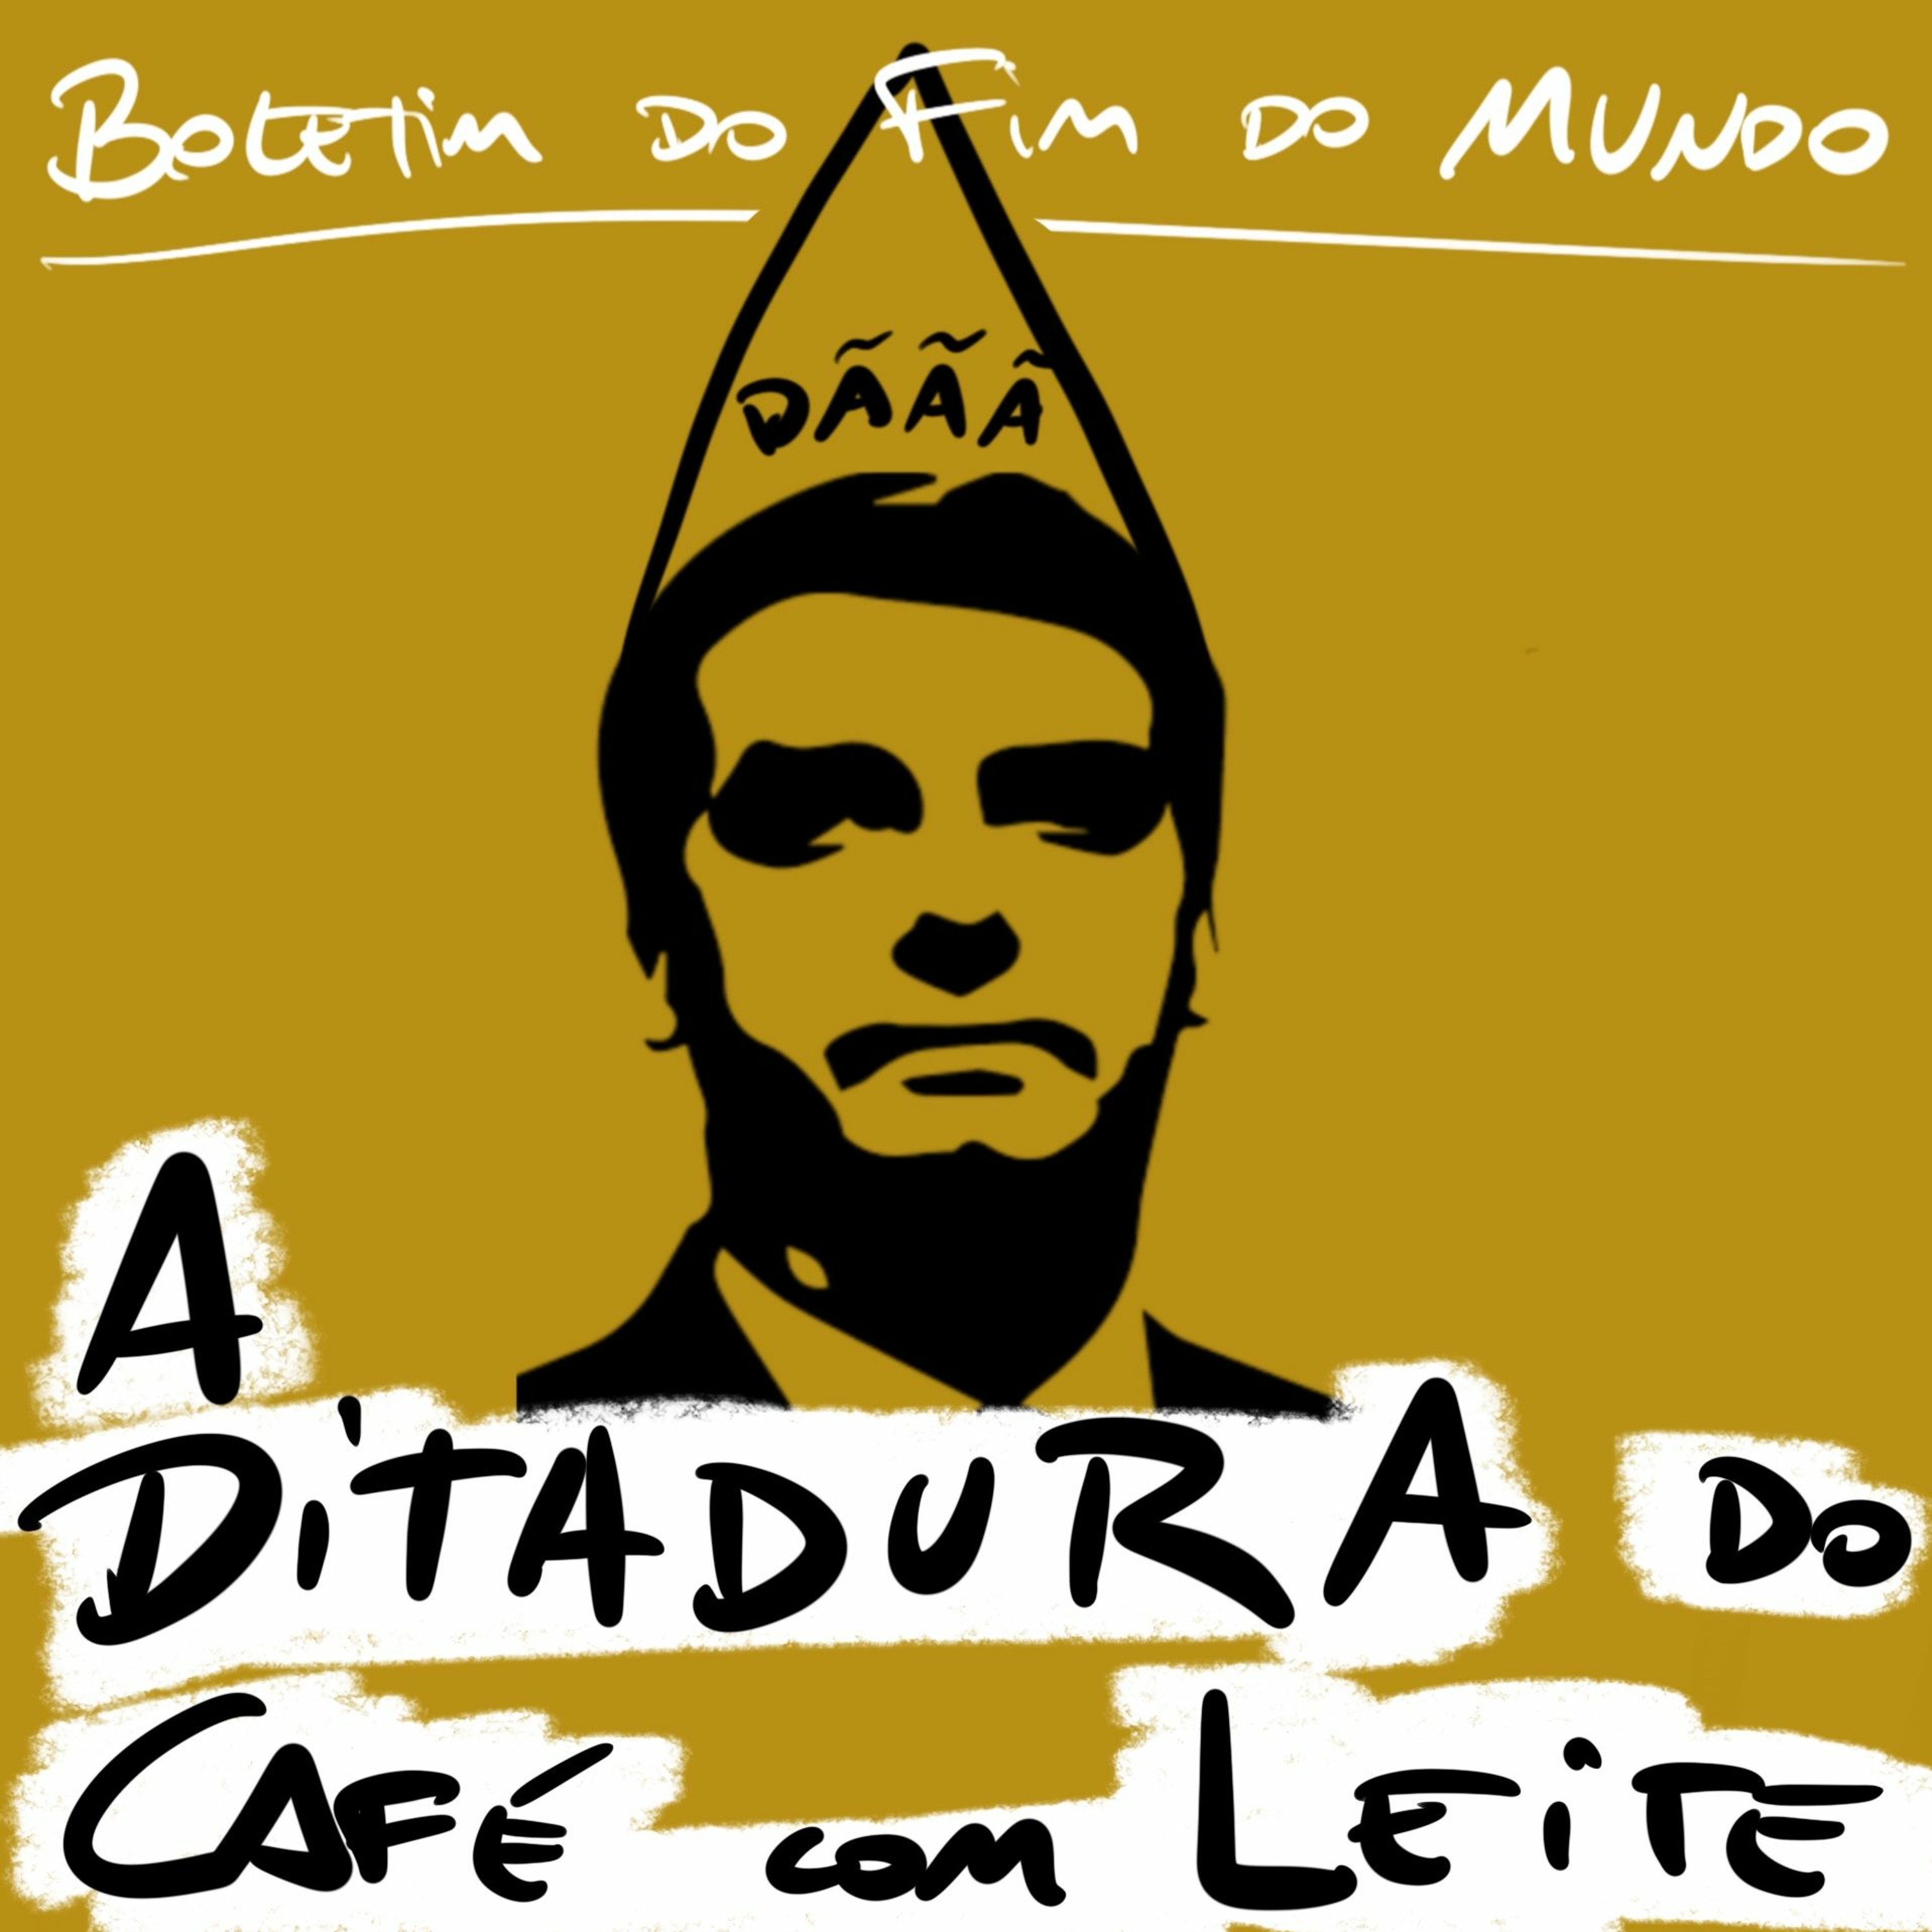 BFM - 6-4 - A Ditadura do Café com Leite. Autoritarismo sem Autoridade